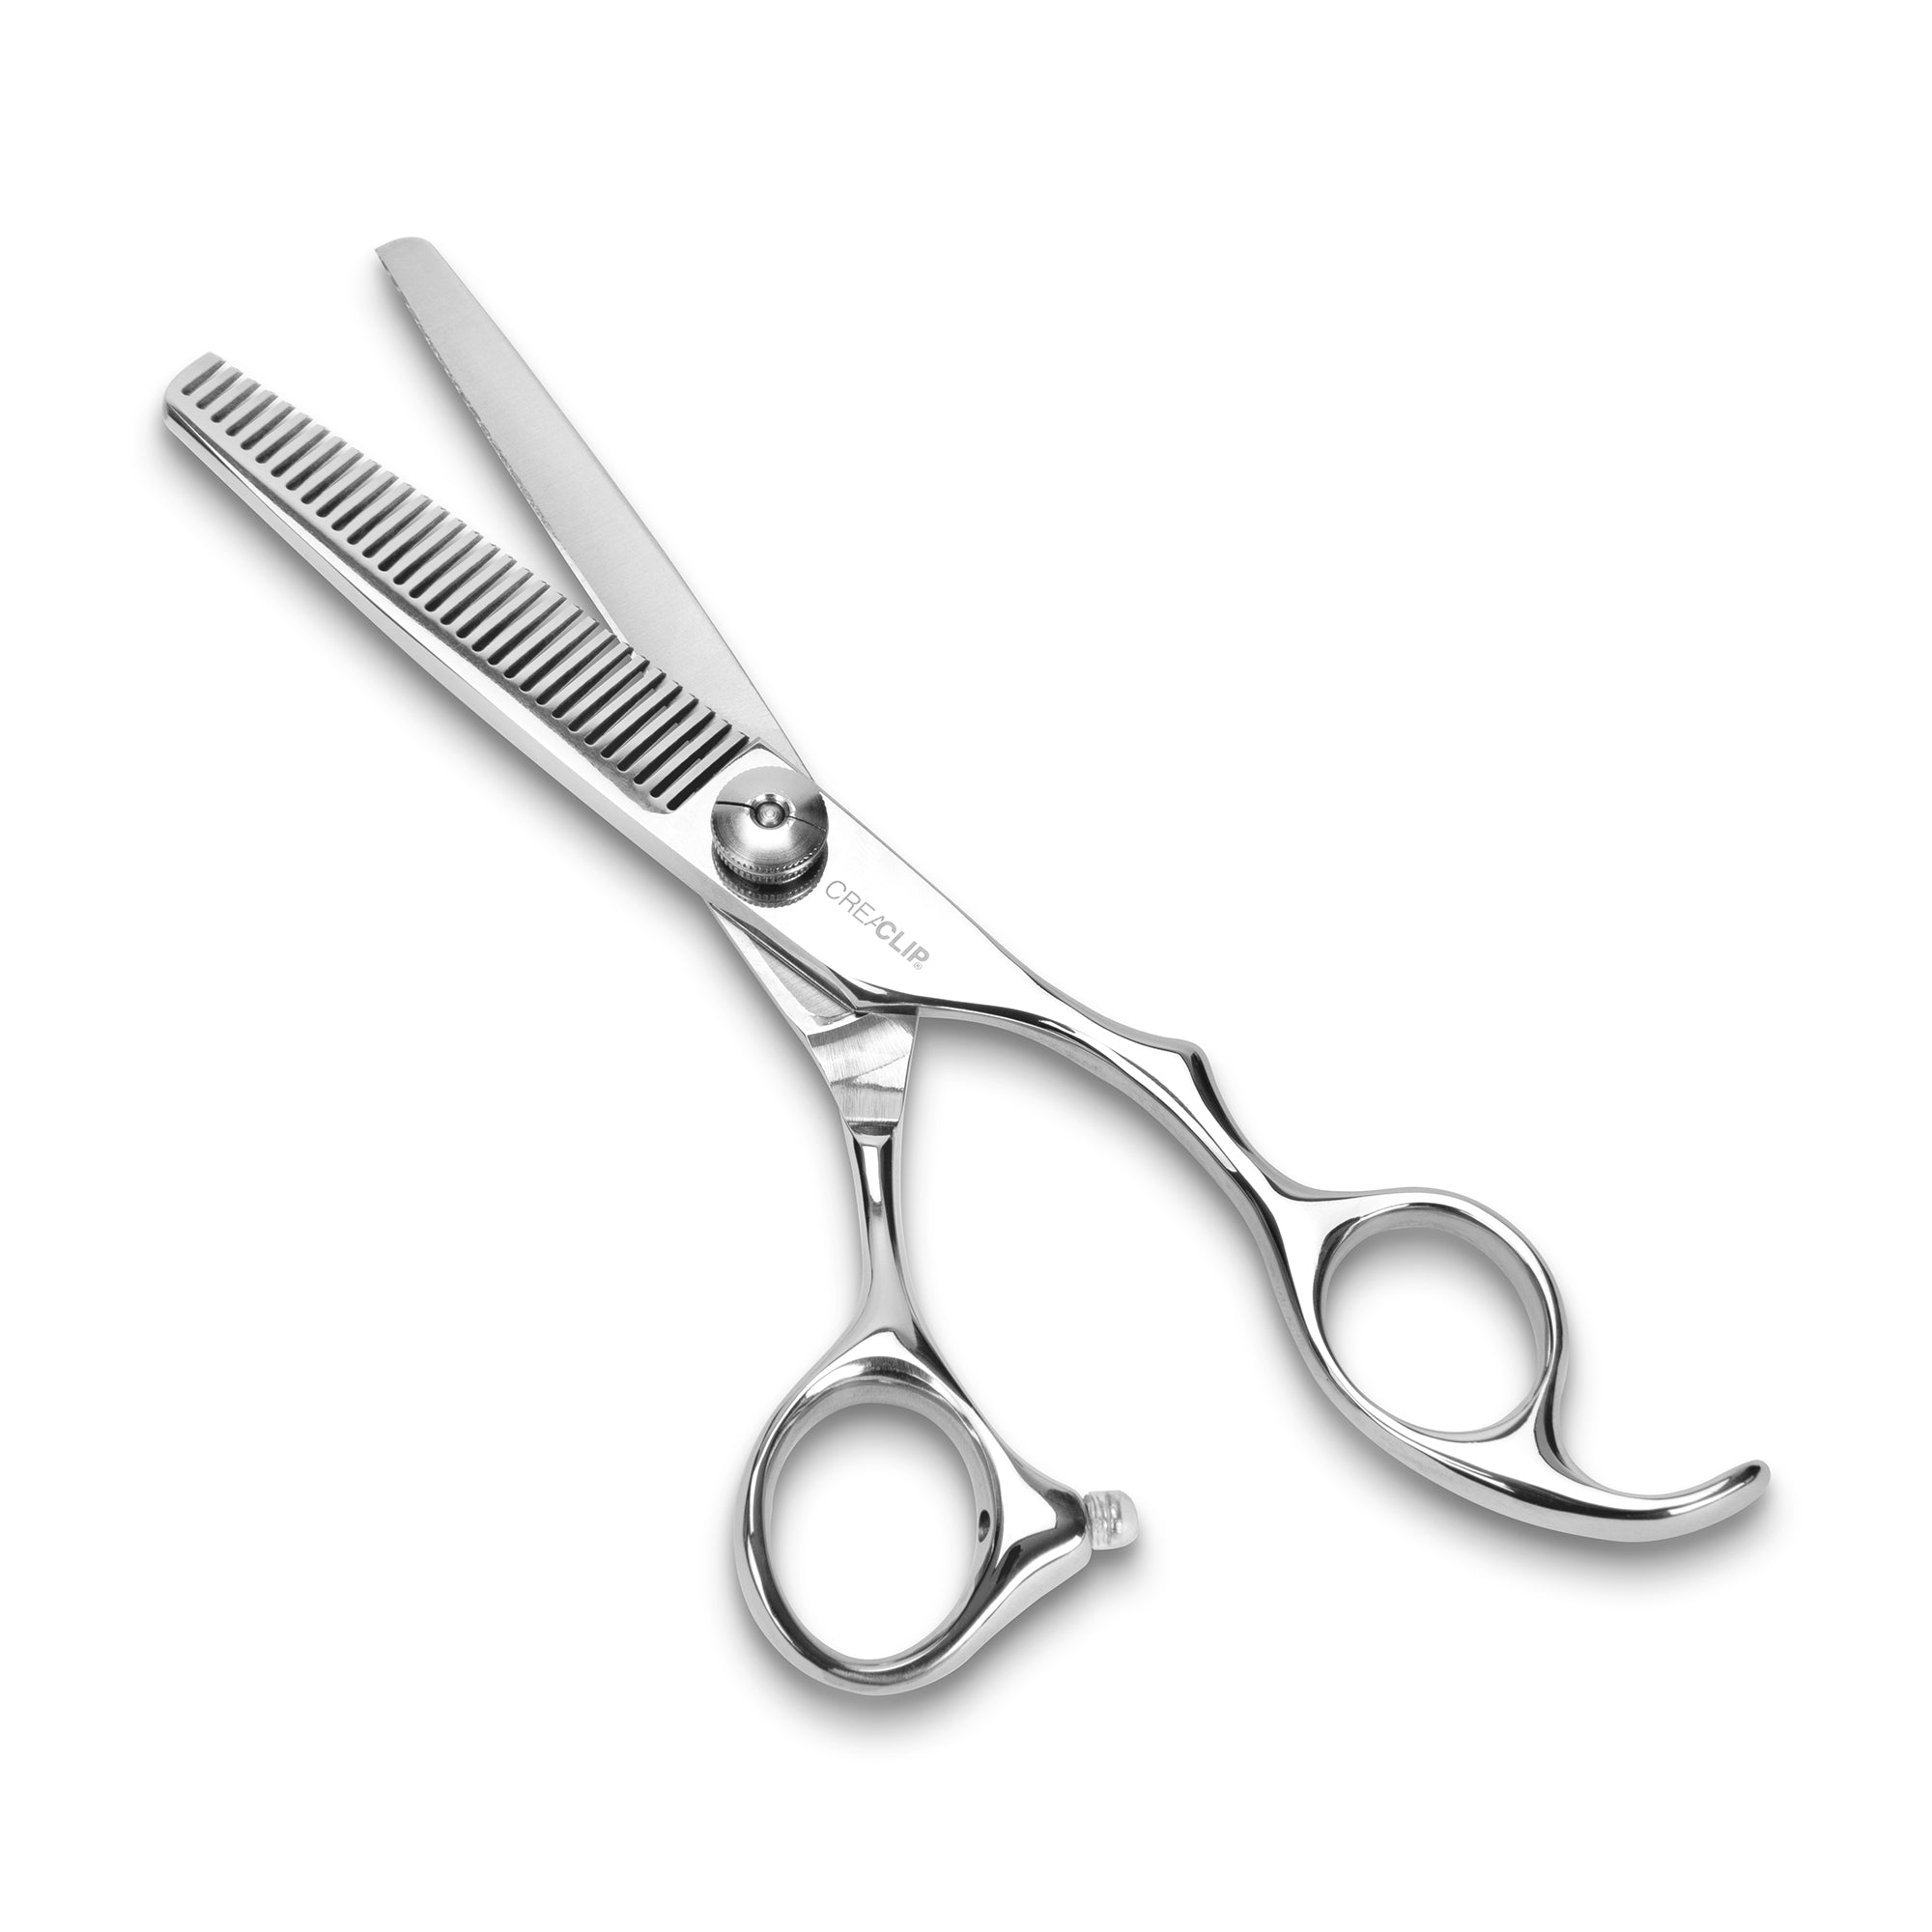 CreaClip Premium Professional Hair Cutting Scissors